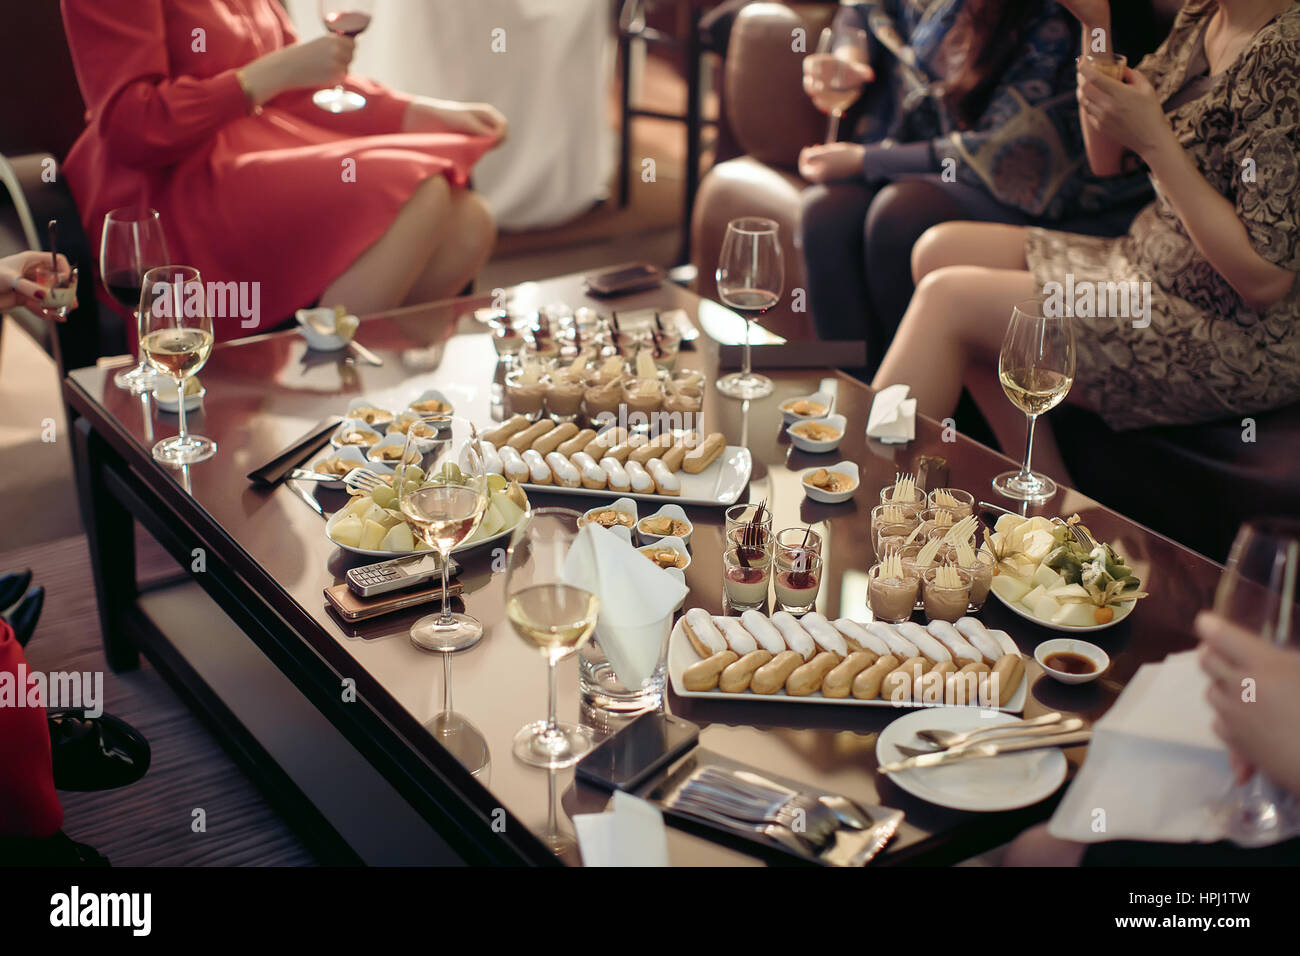 Buffet de desserts avec jambes femme entourée de vin Banque D'Images